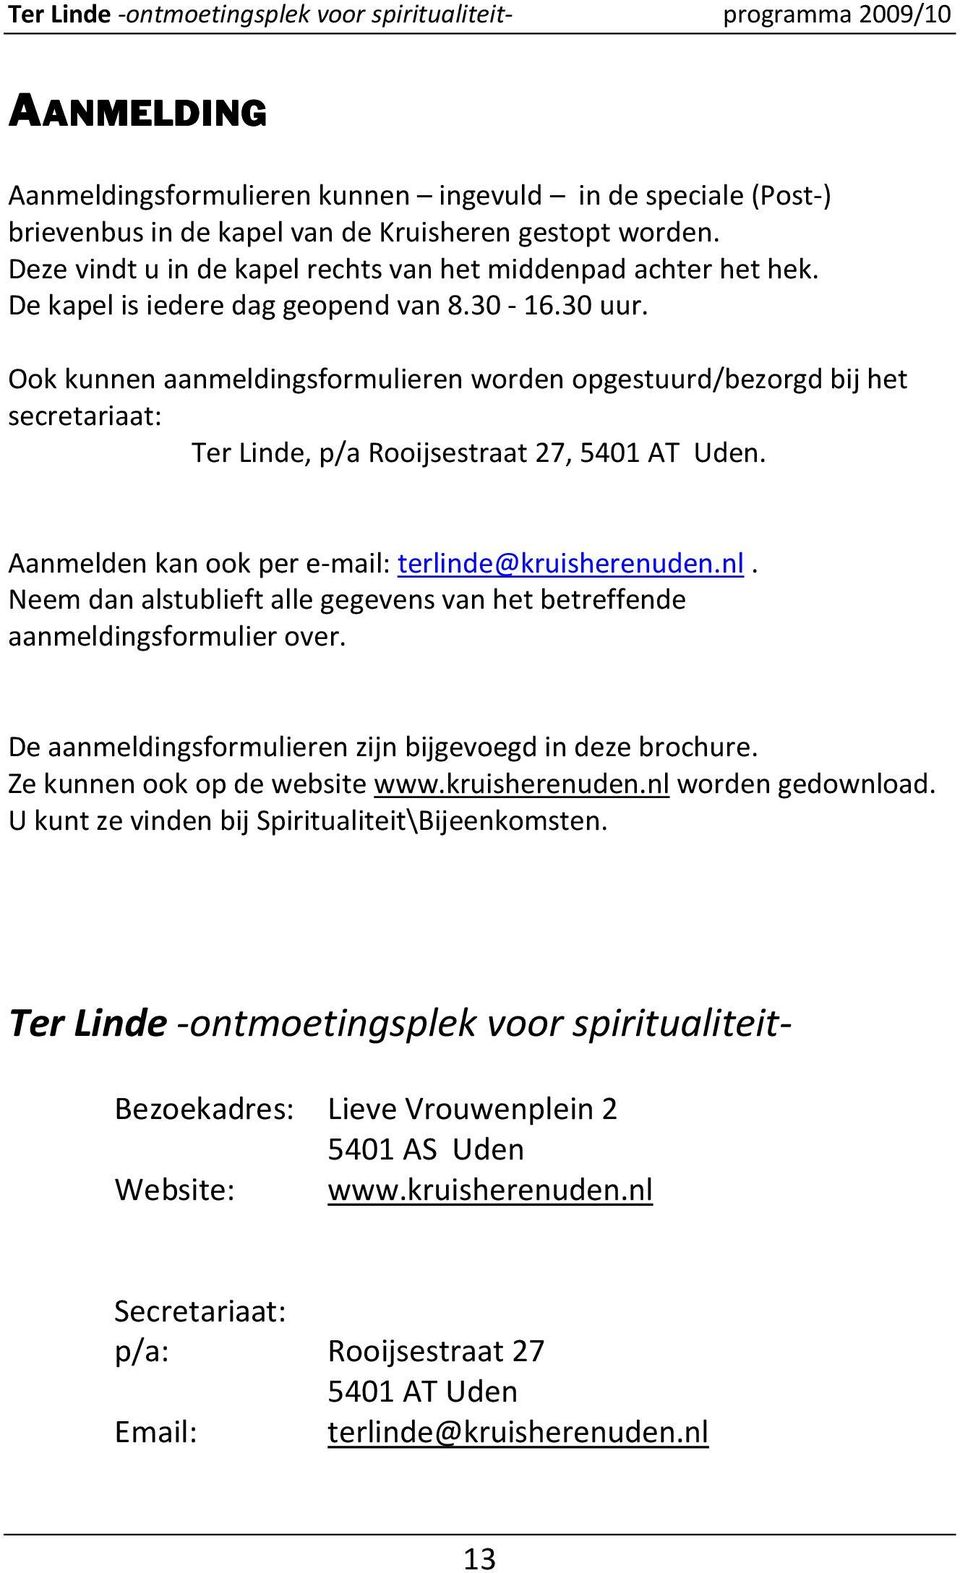 Ook kunnen aanmeldingsformulieren worden opgestuurd/bezorgd bij het secretariaat: Ter Linde, p/a Rooijsestraat 27, 5401 AT Uden. Aanmelden kan ook per e-mail: terlinde@kruisherenuden.nl.